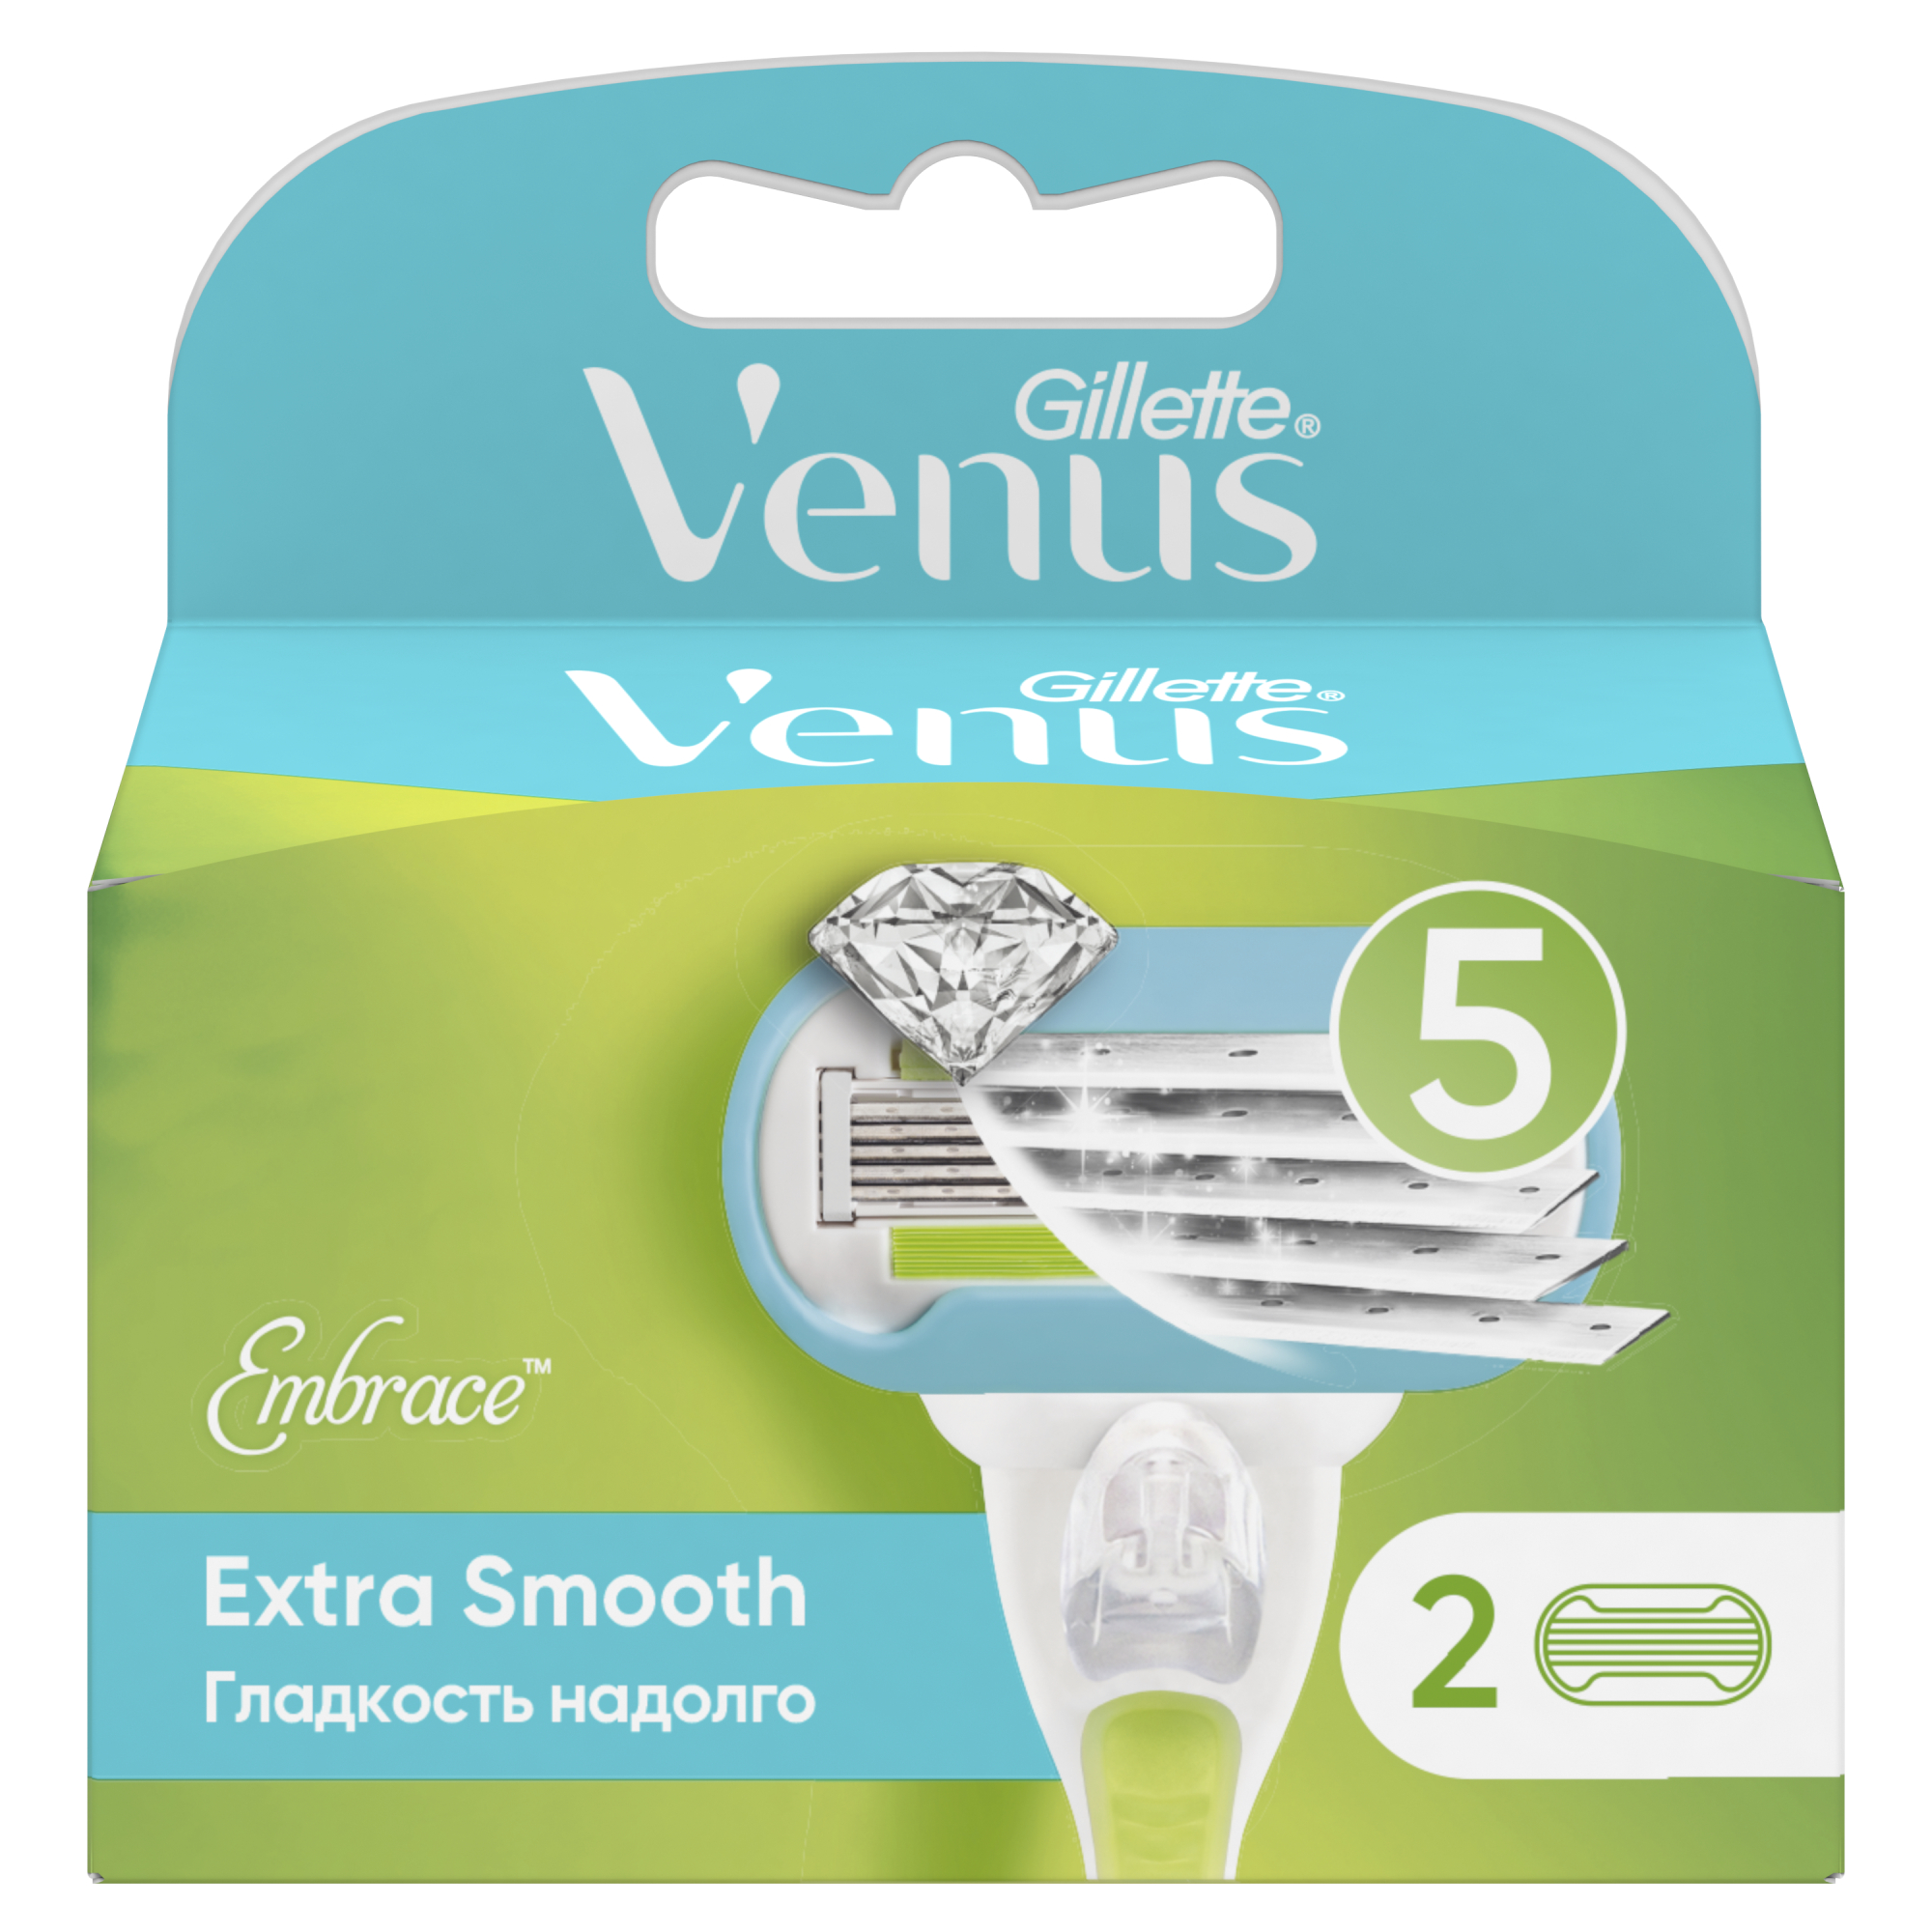 Сменные кассеты для женской бритвы Venus Extra Smooth, 5 лезвий, 2 шт невероятная гладкость надолго сменные кассеты для женской бритвы venus extra smooth 5 лезвий 2 шт невероятная гладкость надолго